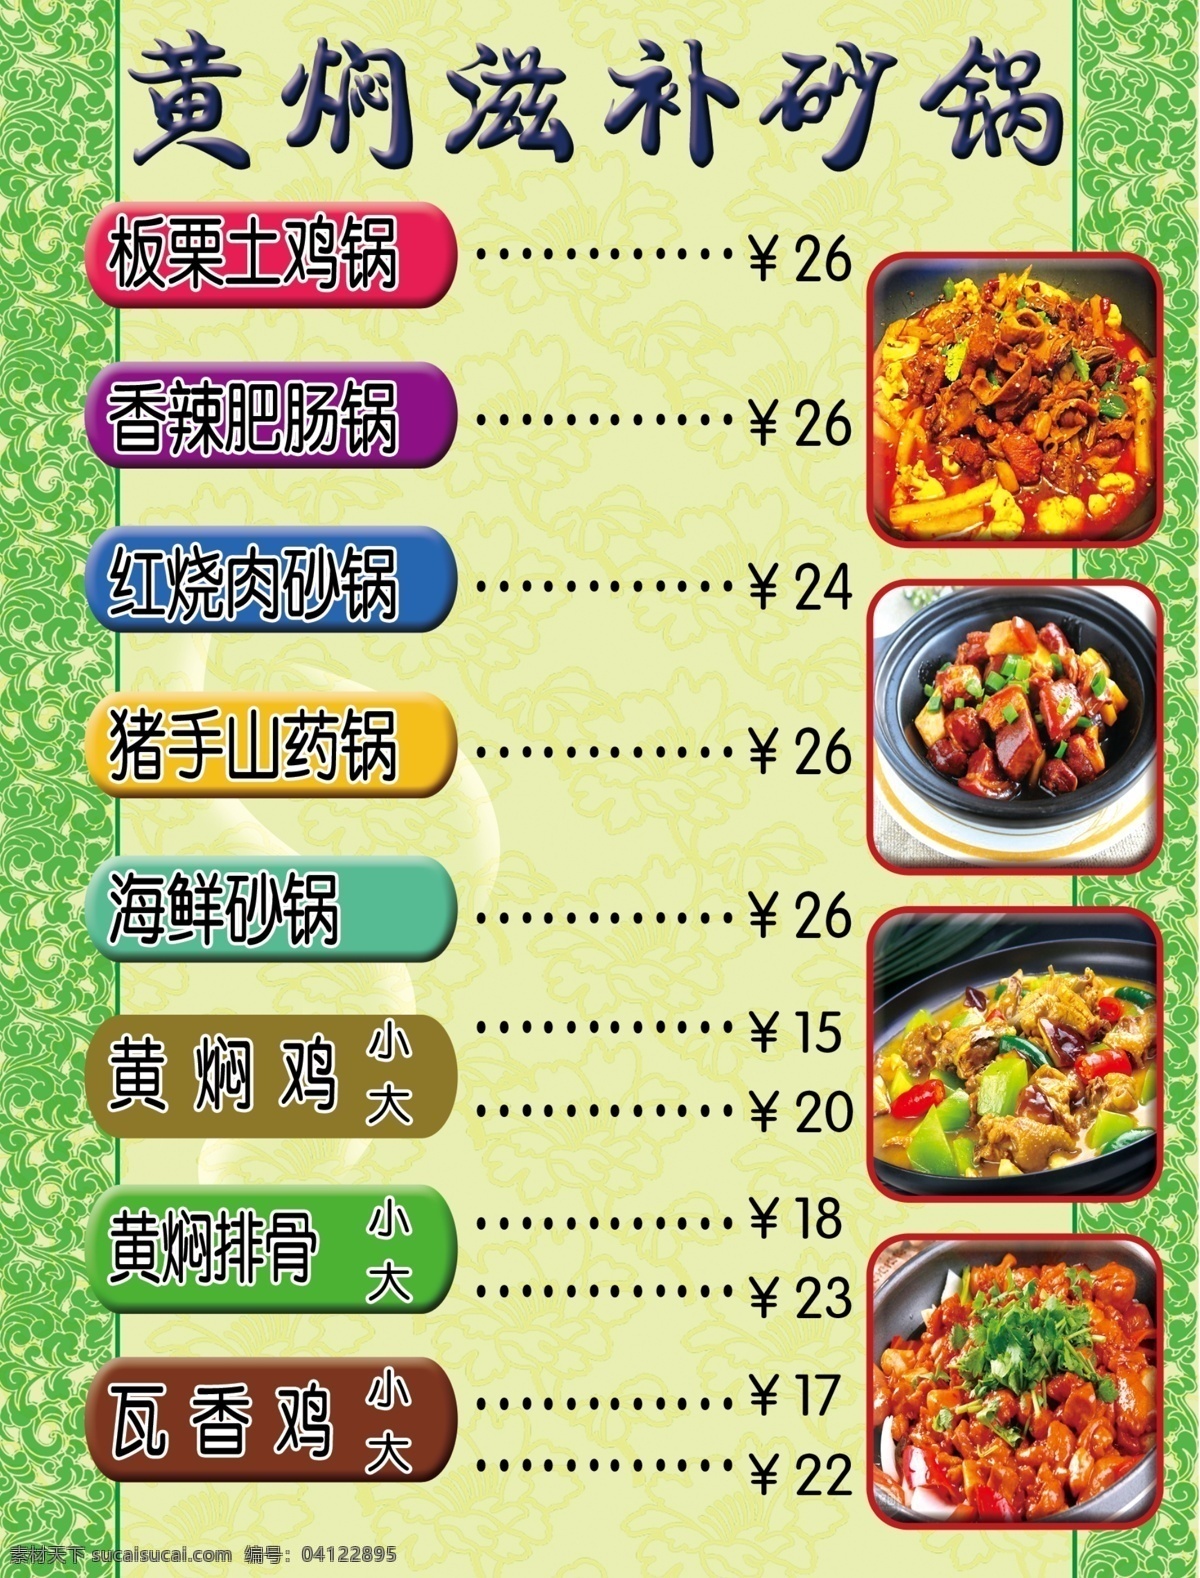 砂锅灯箱片 砂锅 食谱 价格表 绿色 psd分层 黄色